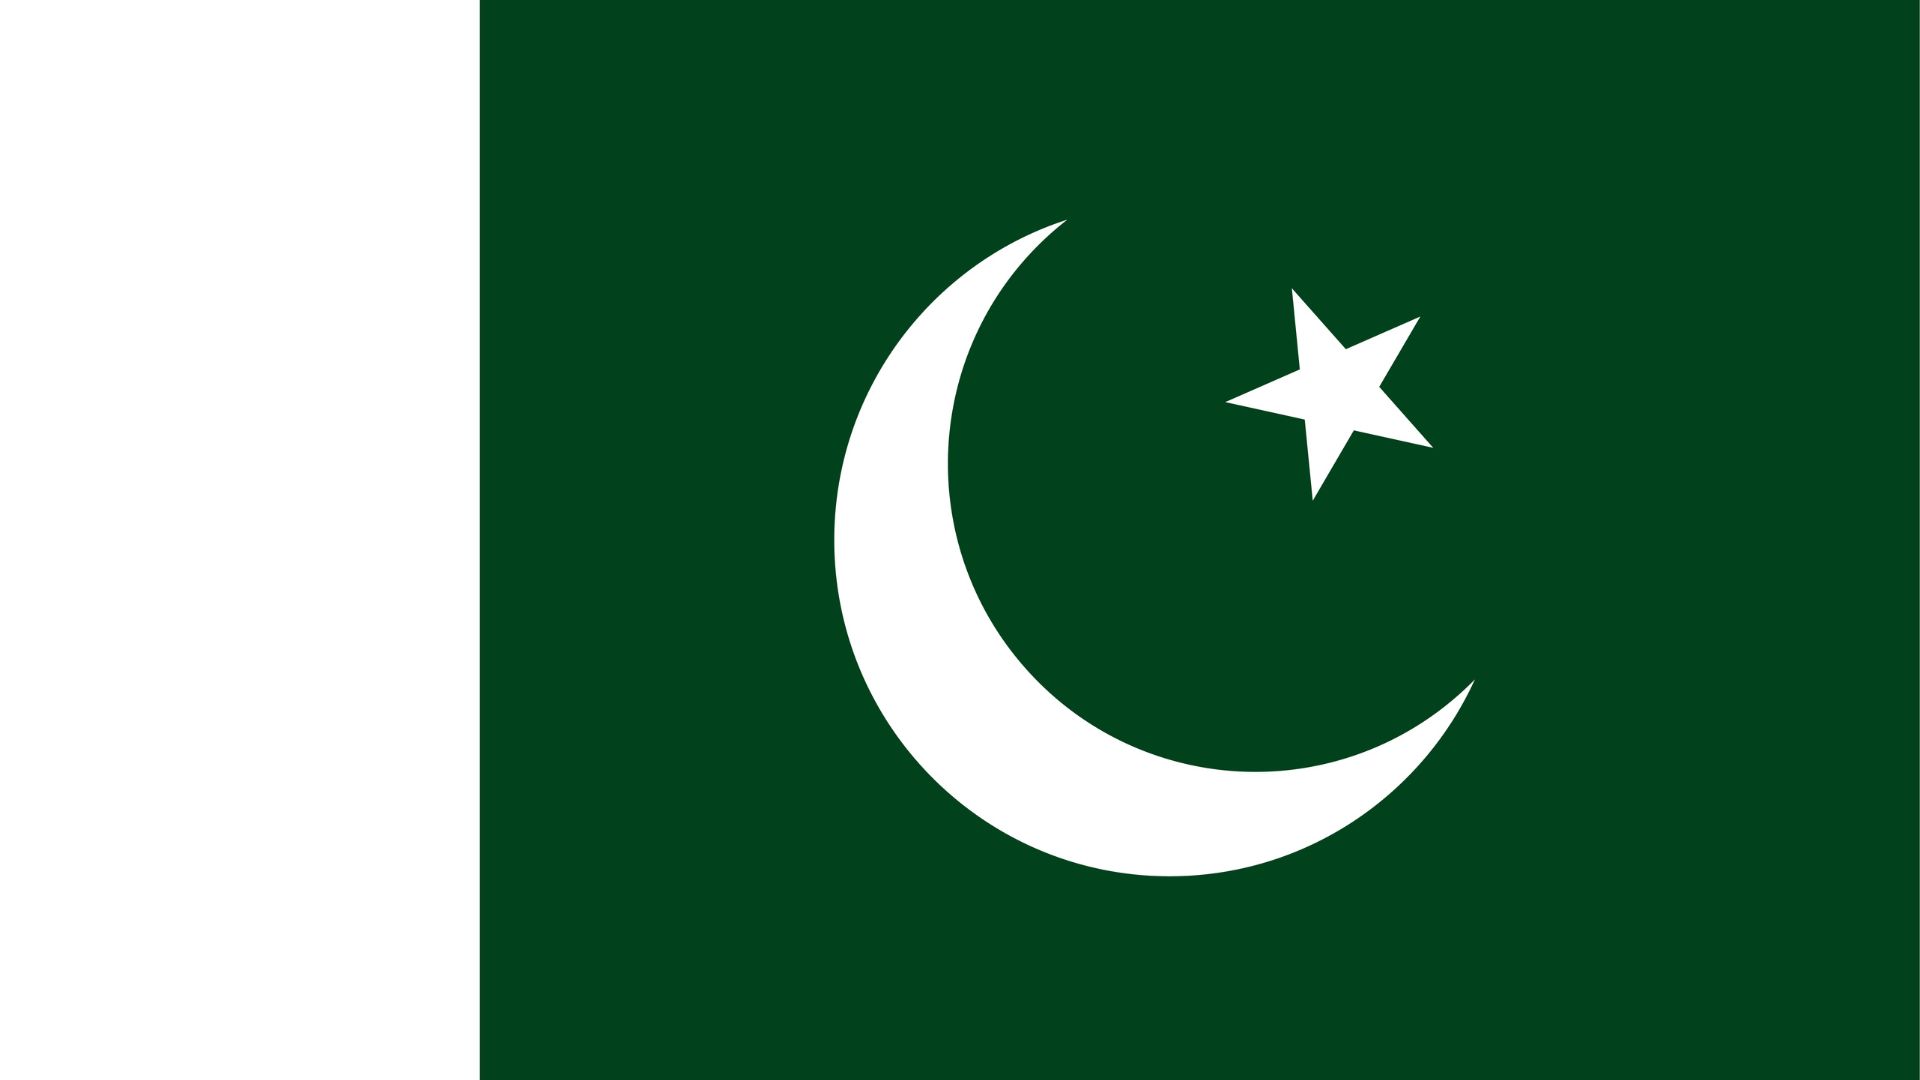 A bandeira do Paquistão consiste de um campo verde escuro, com uma faixa branca no lado do haste. No centro, há uma lua crescente branca  e uma estrela de cinco pontas.